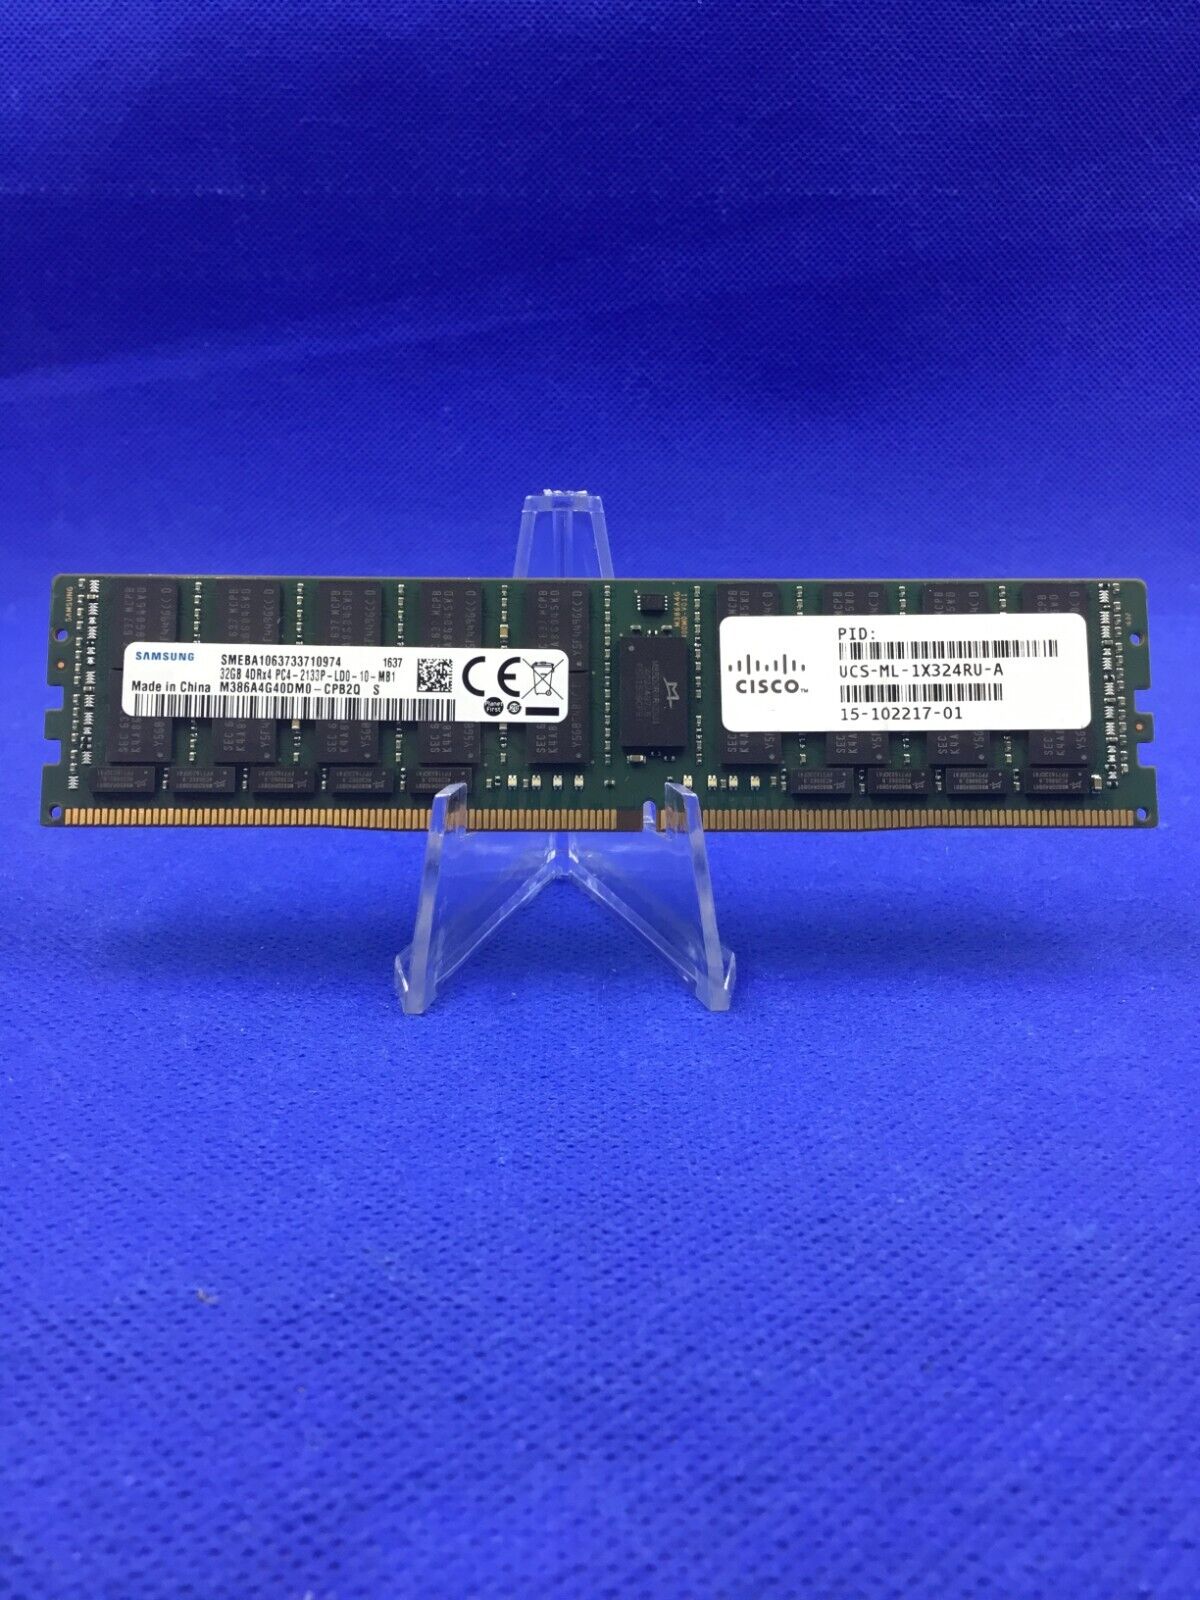 M386A4G40DM0-CPB 32GB PC4-17000 Ddr4-2133Mhz 4RX4 Ecc memory UCS-ML-1X324RU-A